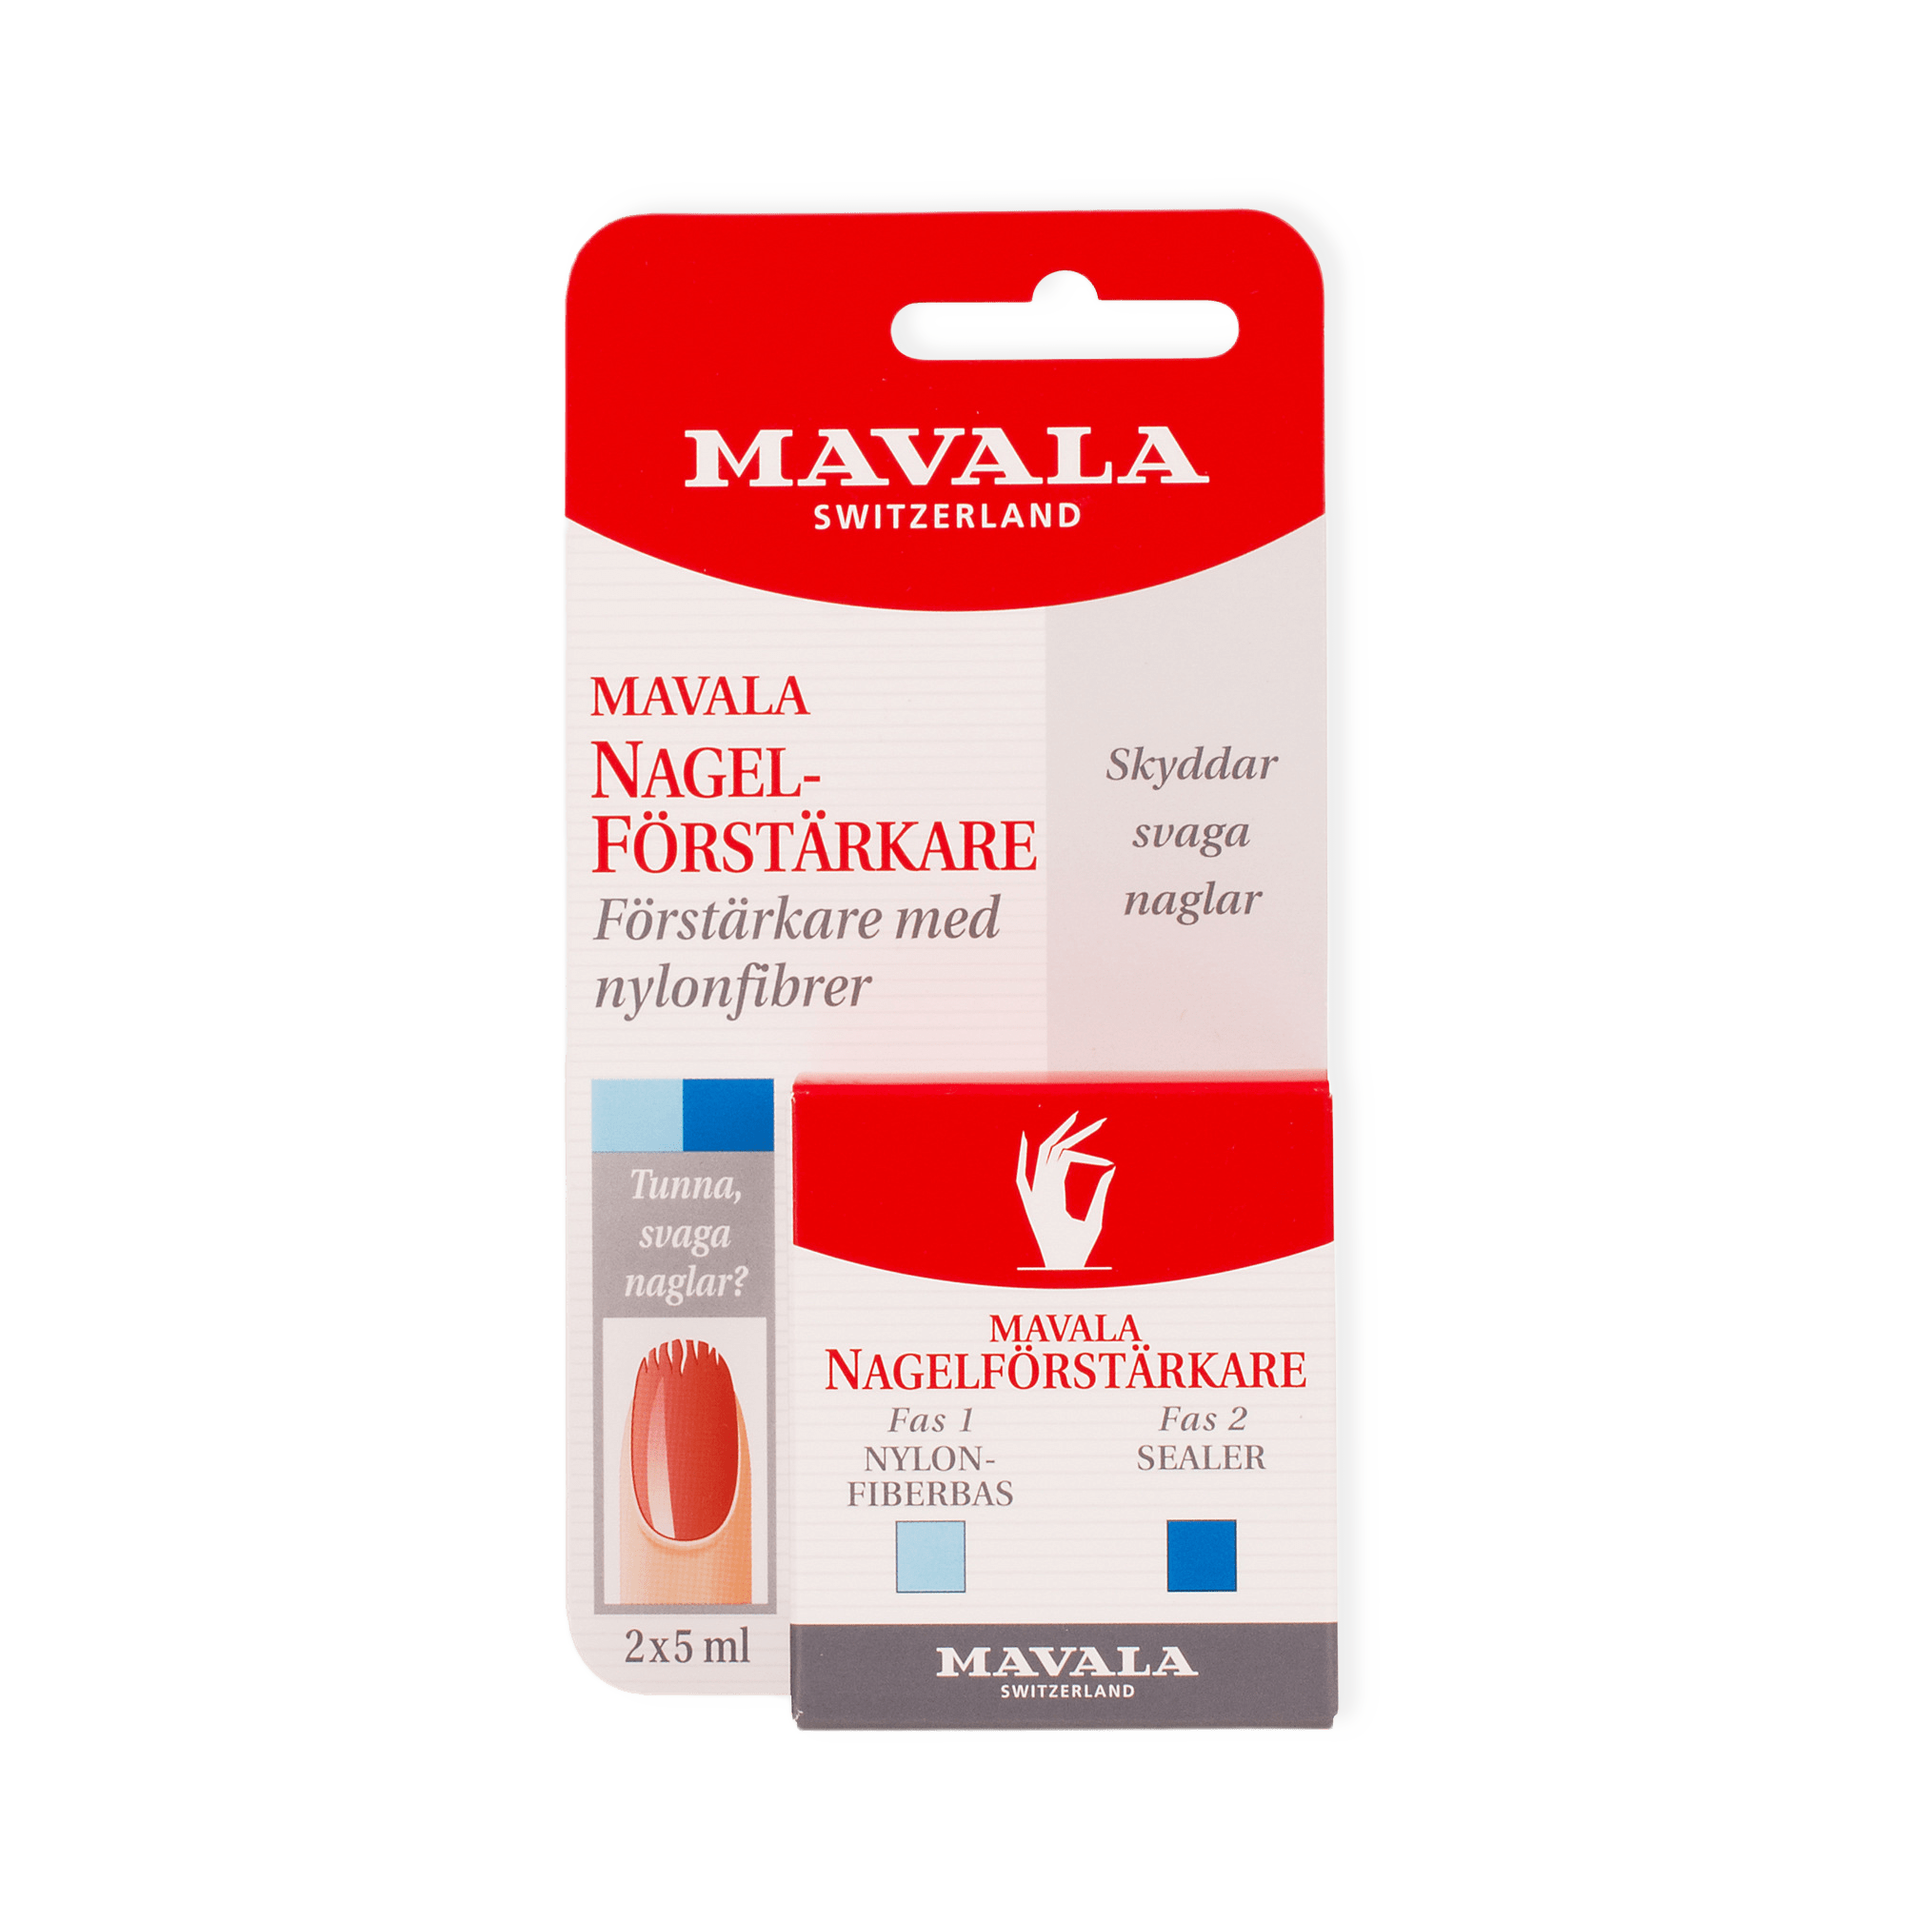 Nagelförstärkare 2-Fas, 5 ml från Mavala